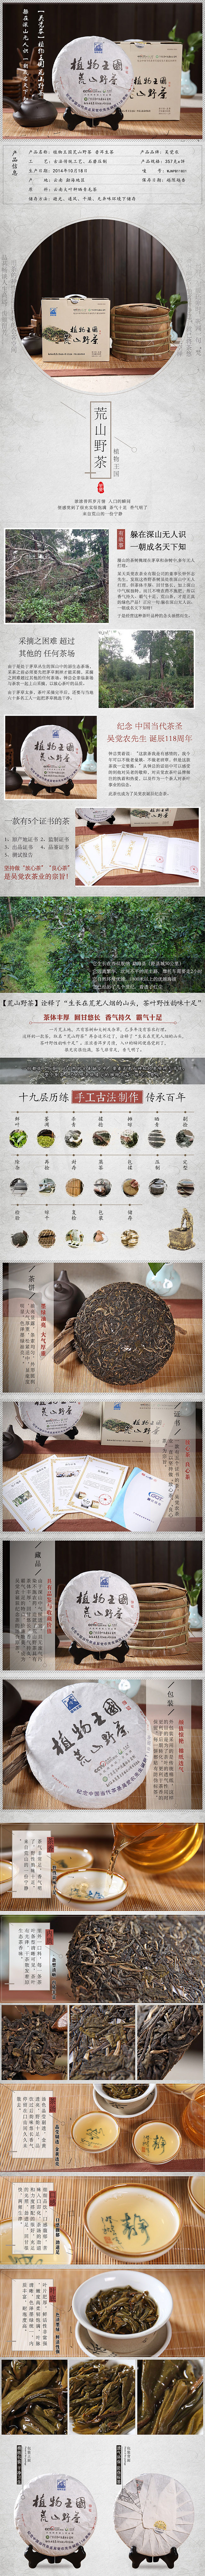 吴觉农 茶叶 云南普洱茶 植物王国 荒山野茶(图1)